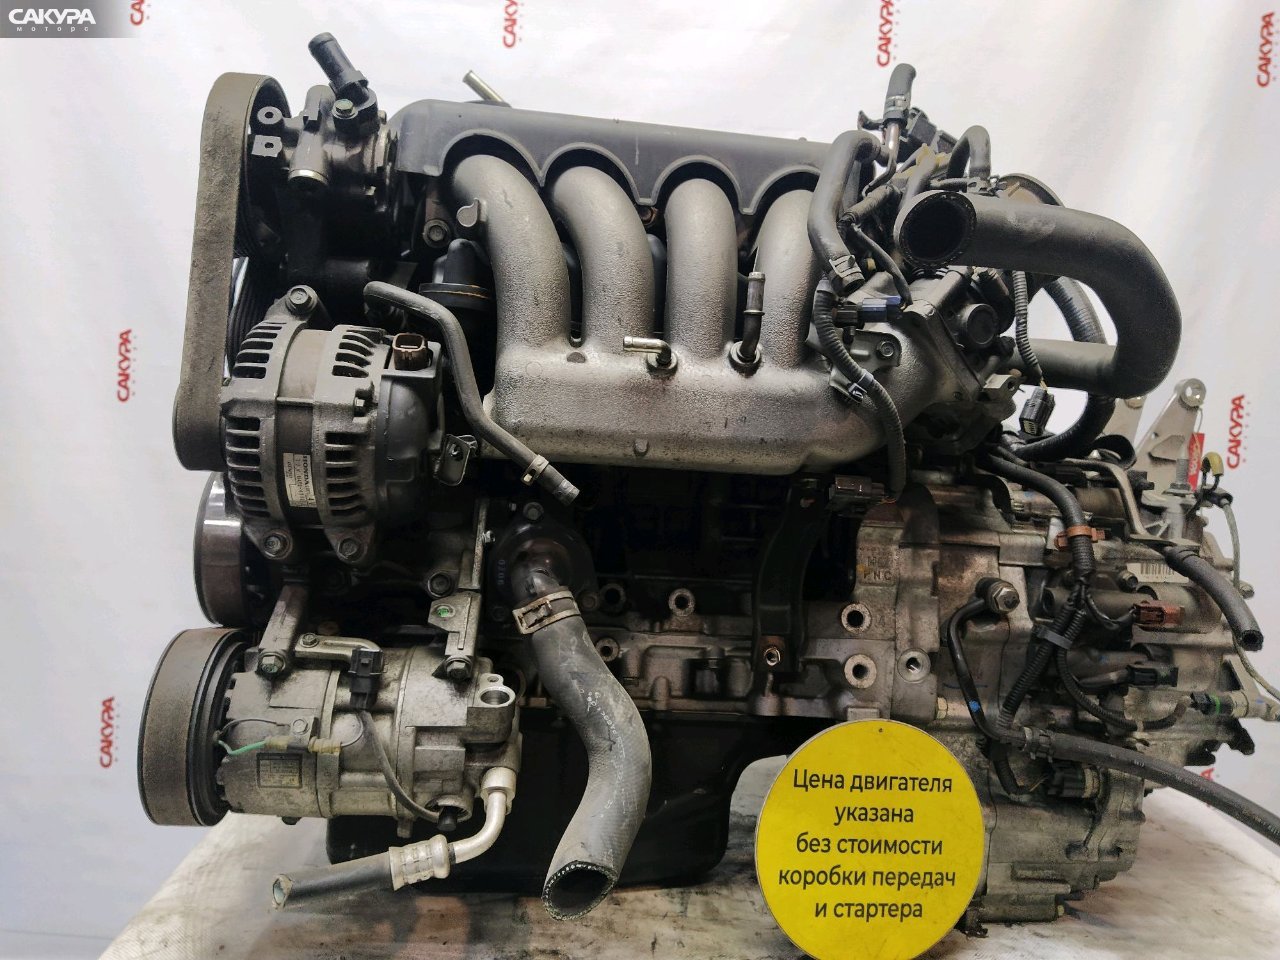 Двигатель Honda Stepwgn RG1 K20A: купить в Сакура Красноярск.